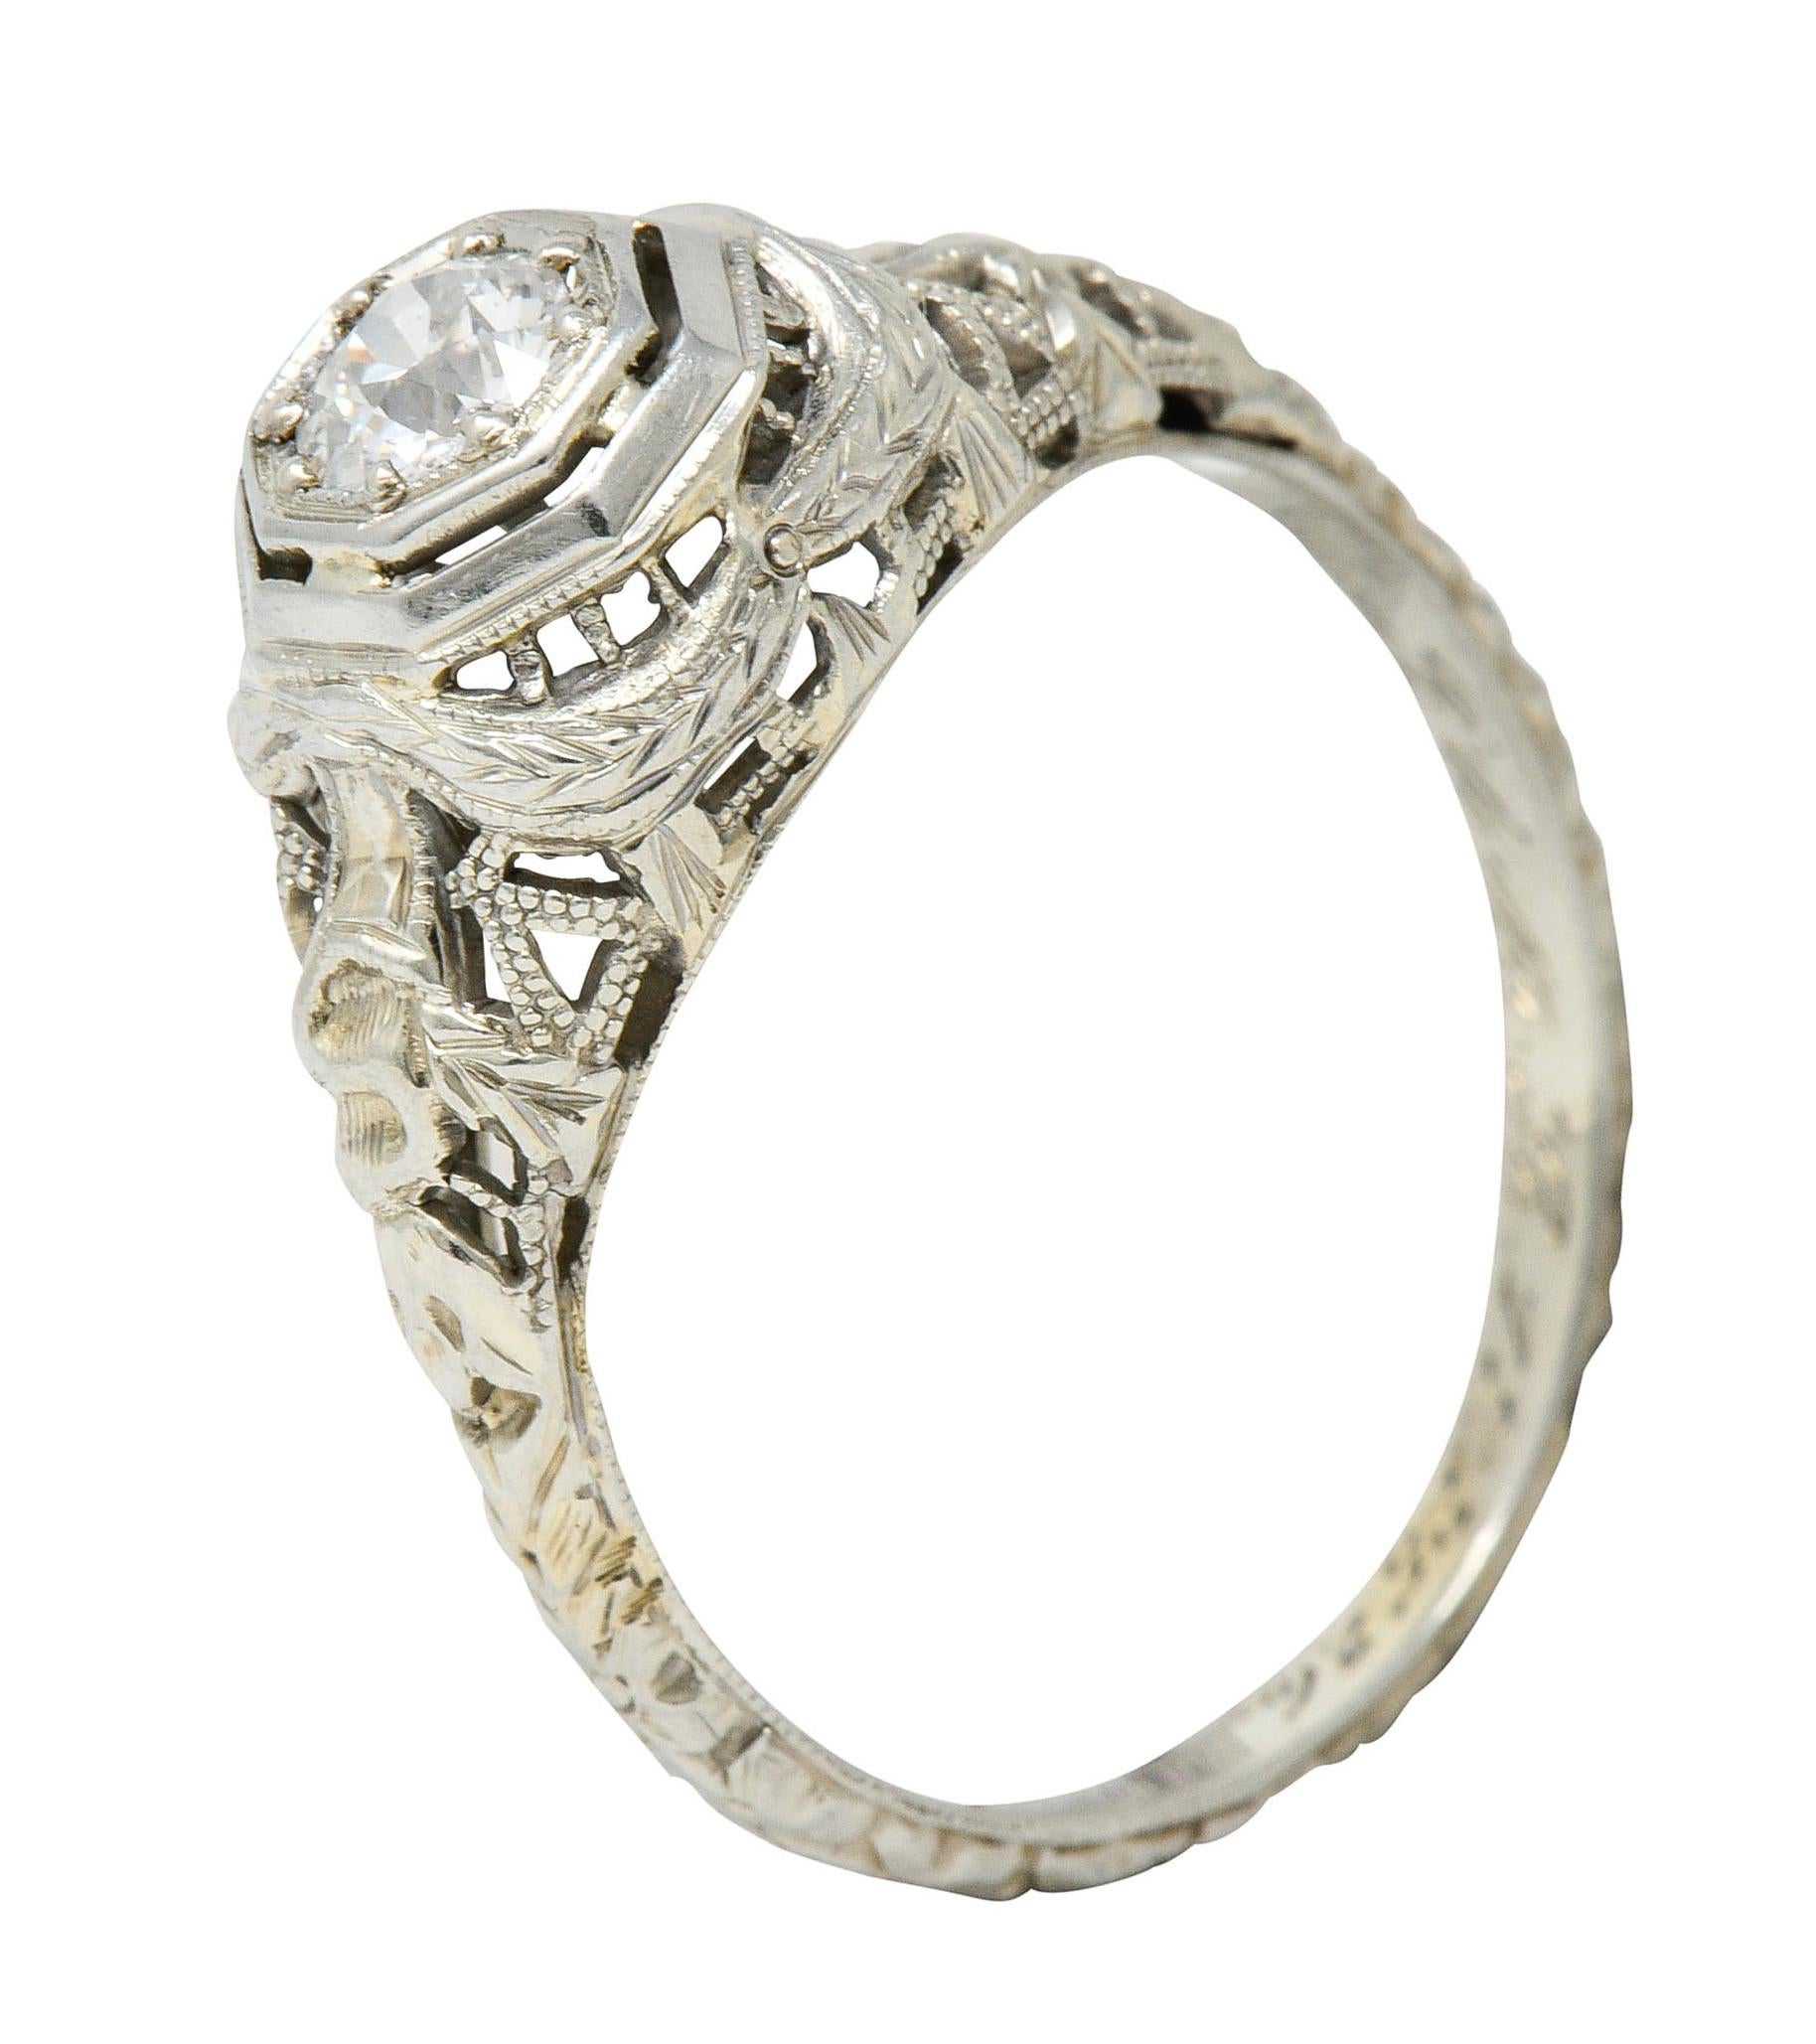 Late Edwardian Diamond 18 Karat White Gold Engagement Ring 2